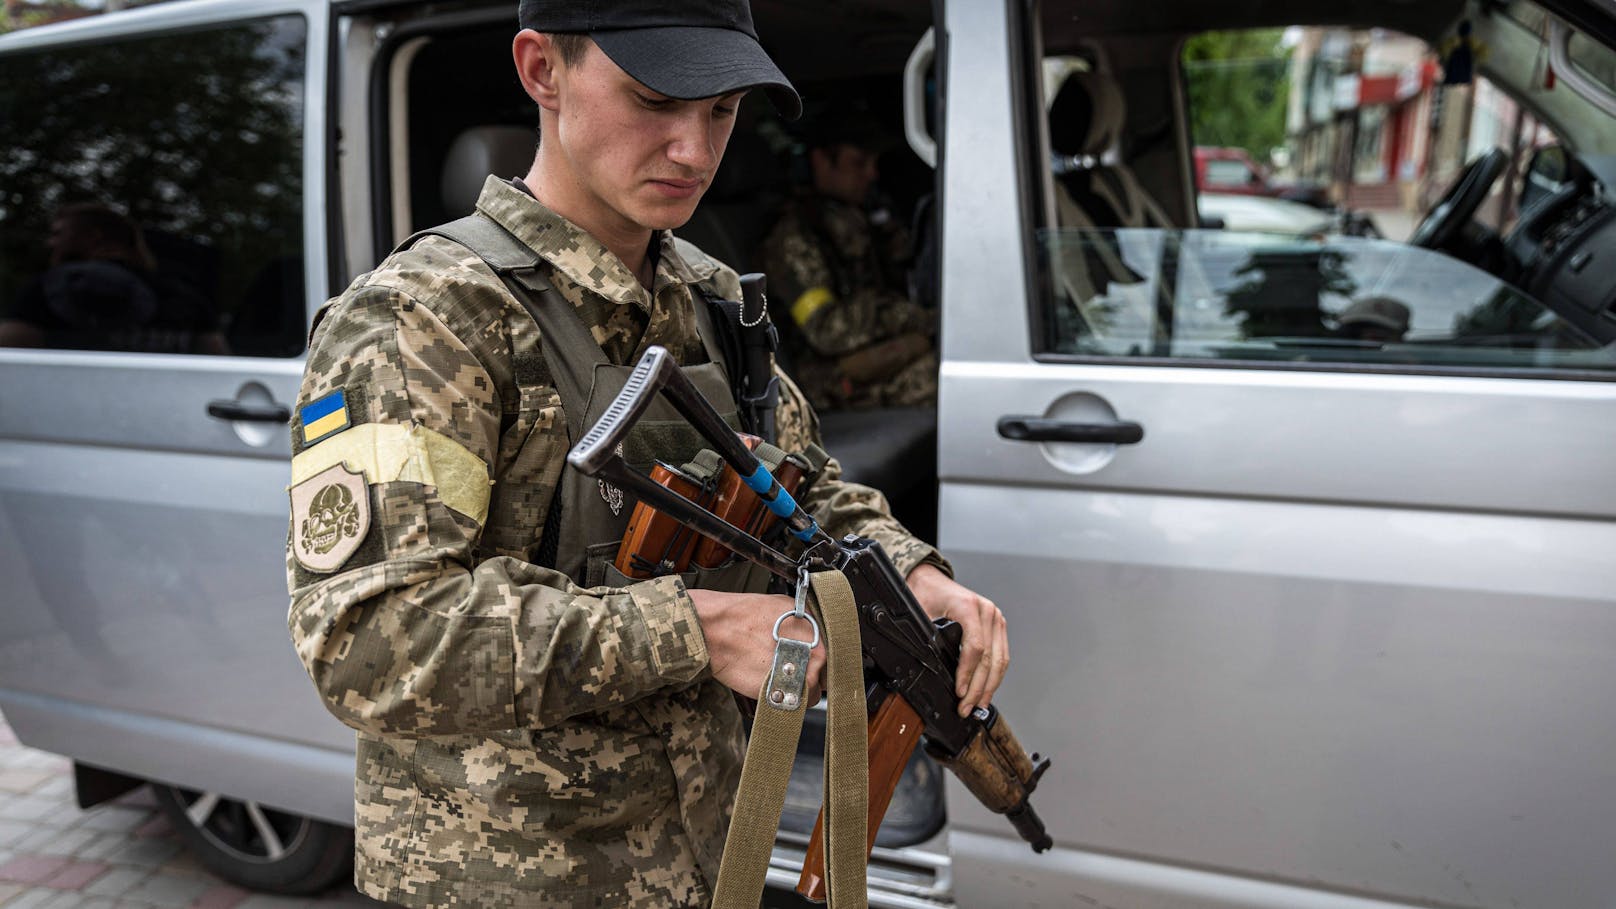 Eine niedrige einstellige Anzahl an Österreichern soll derzeit an Seite der Ukraine kämpfen, so der heimische Staatsschutz. (Symbolbild)